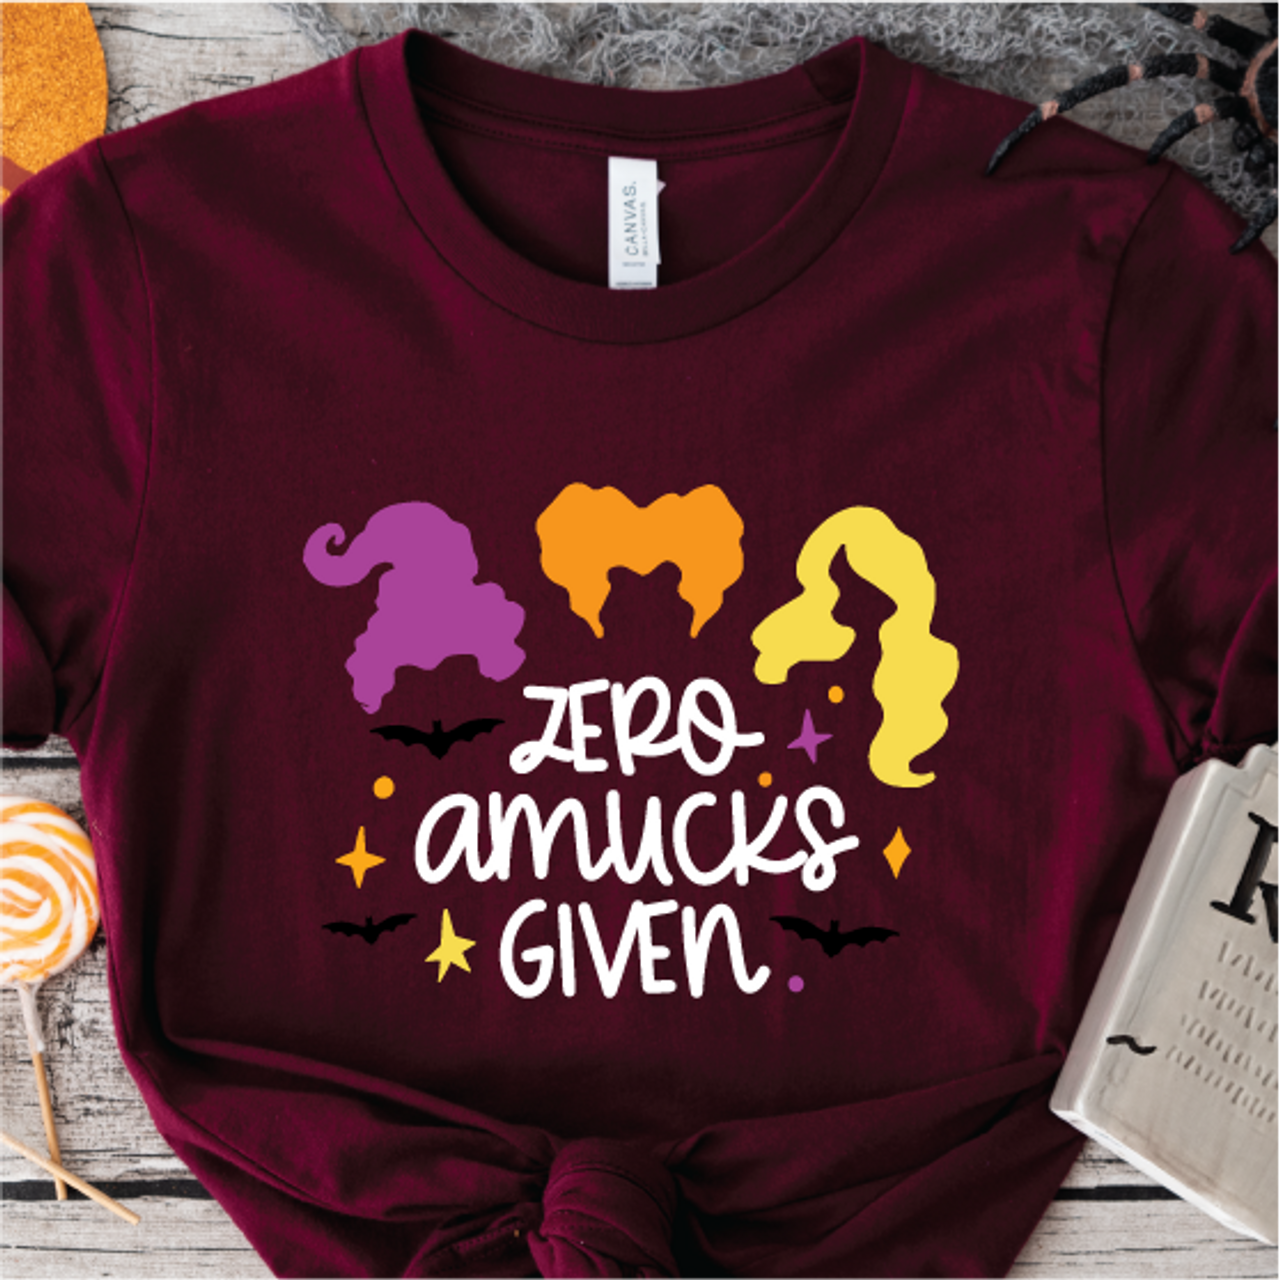 "Zero Amucks Given" T-shirt